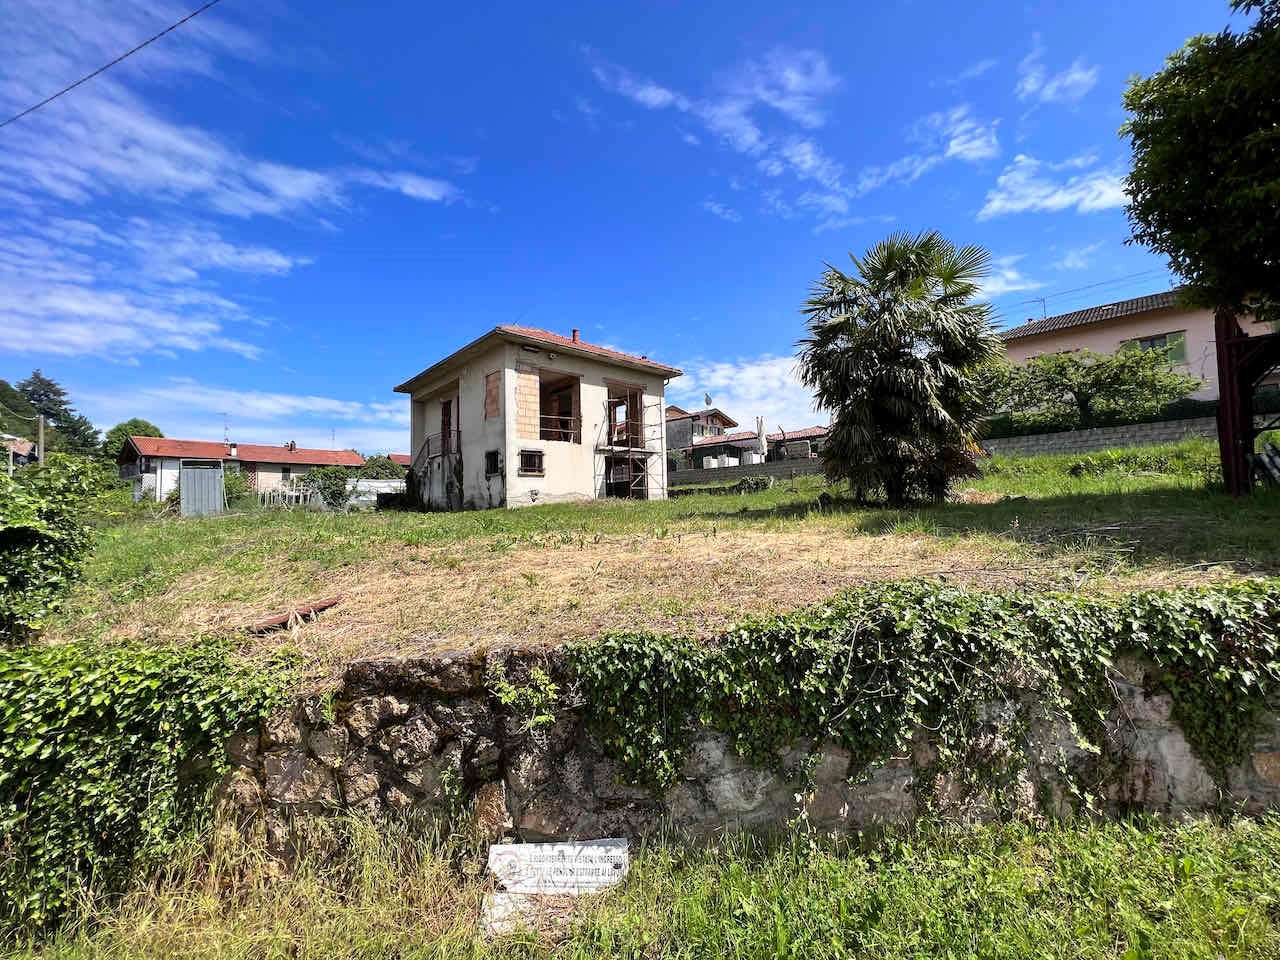 Villa in vendita a Travedona-Monate, 4 locali, prezzo € 165.000 | CambioCasa.it